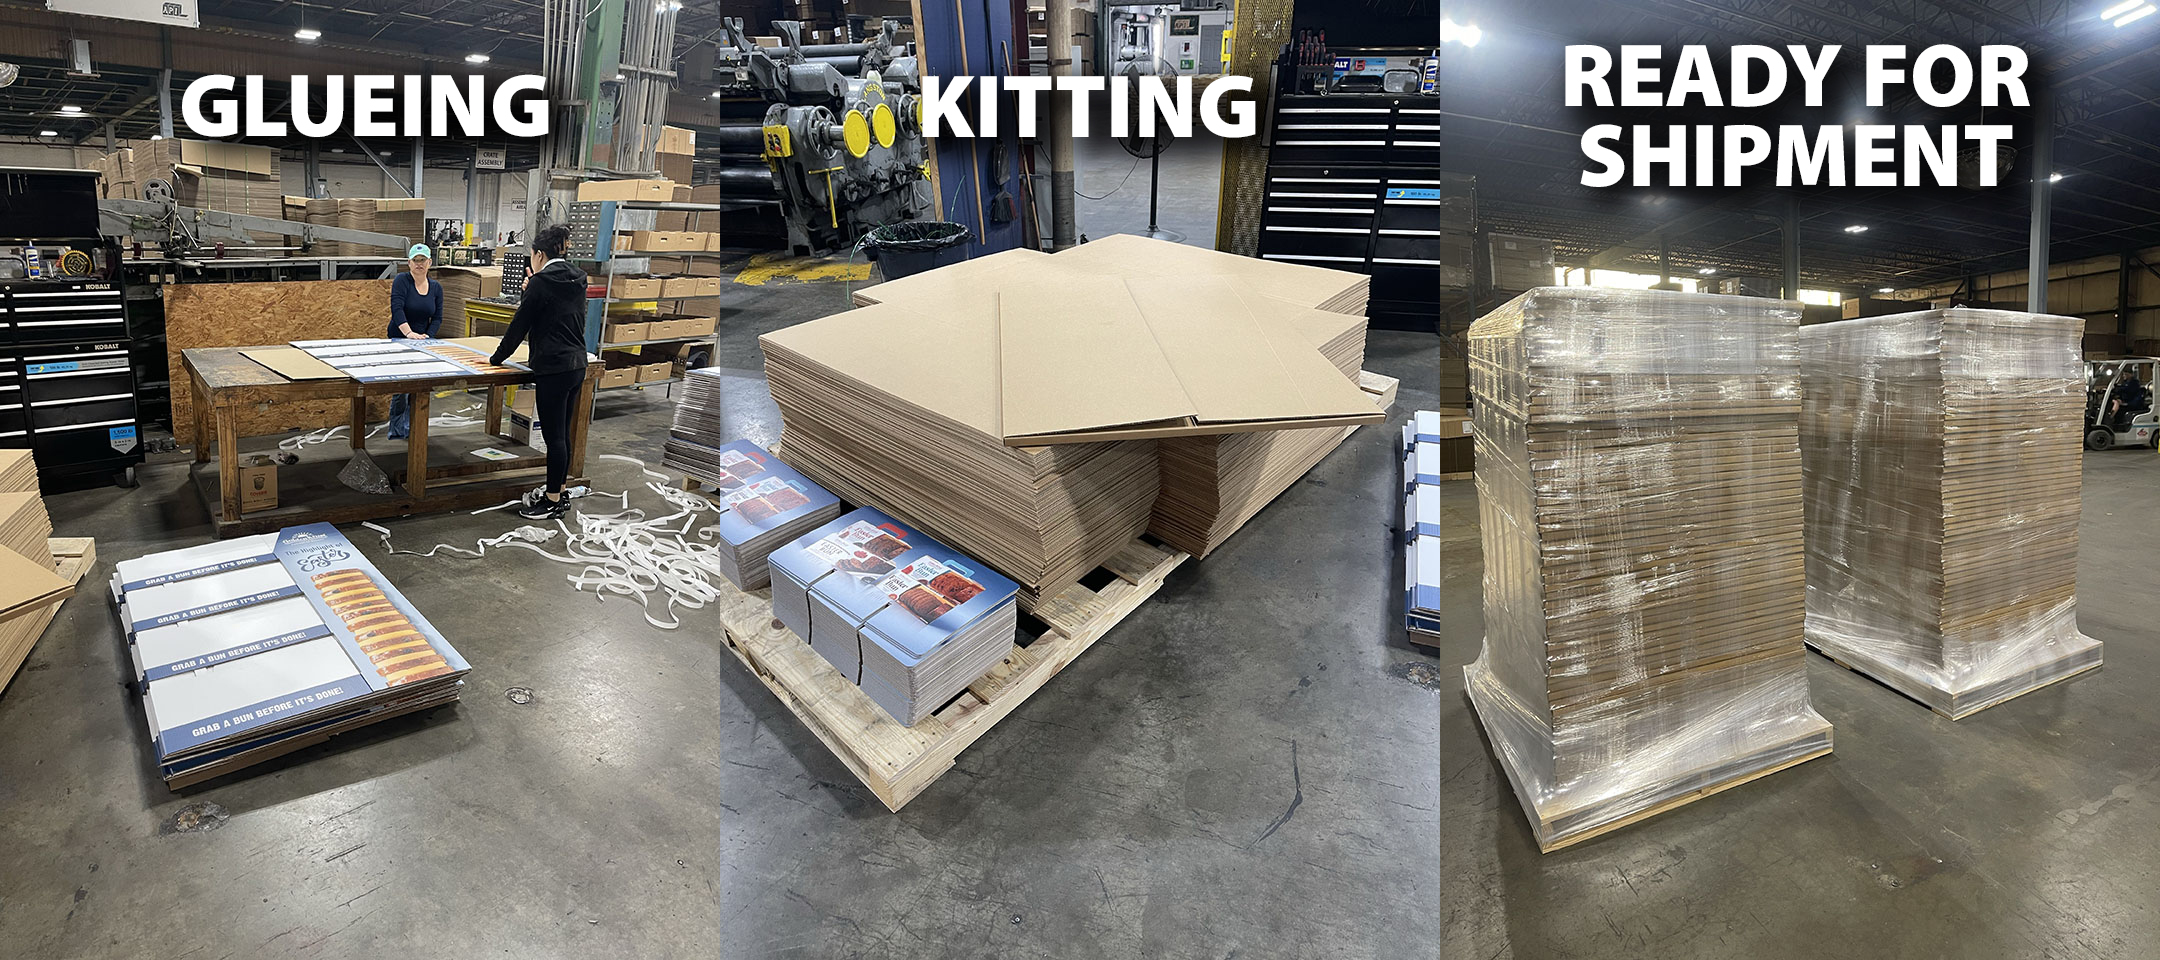 glueing_kitting_shipment